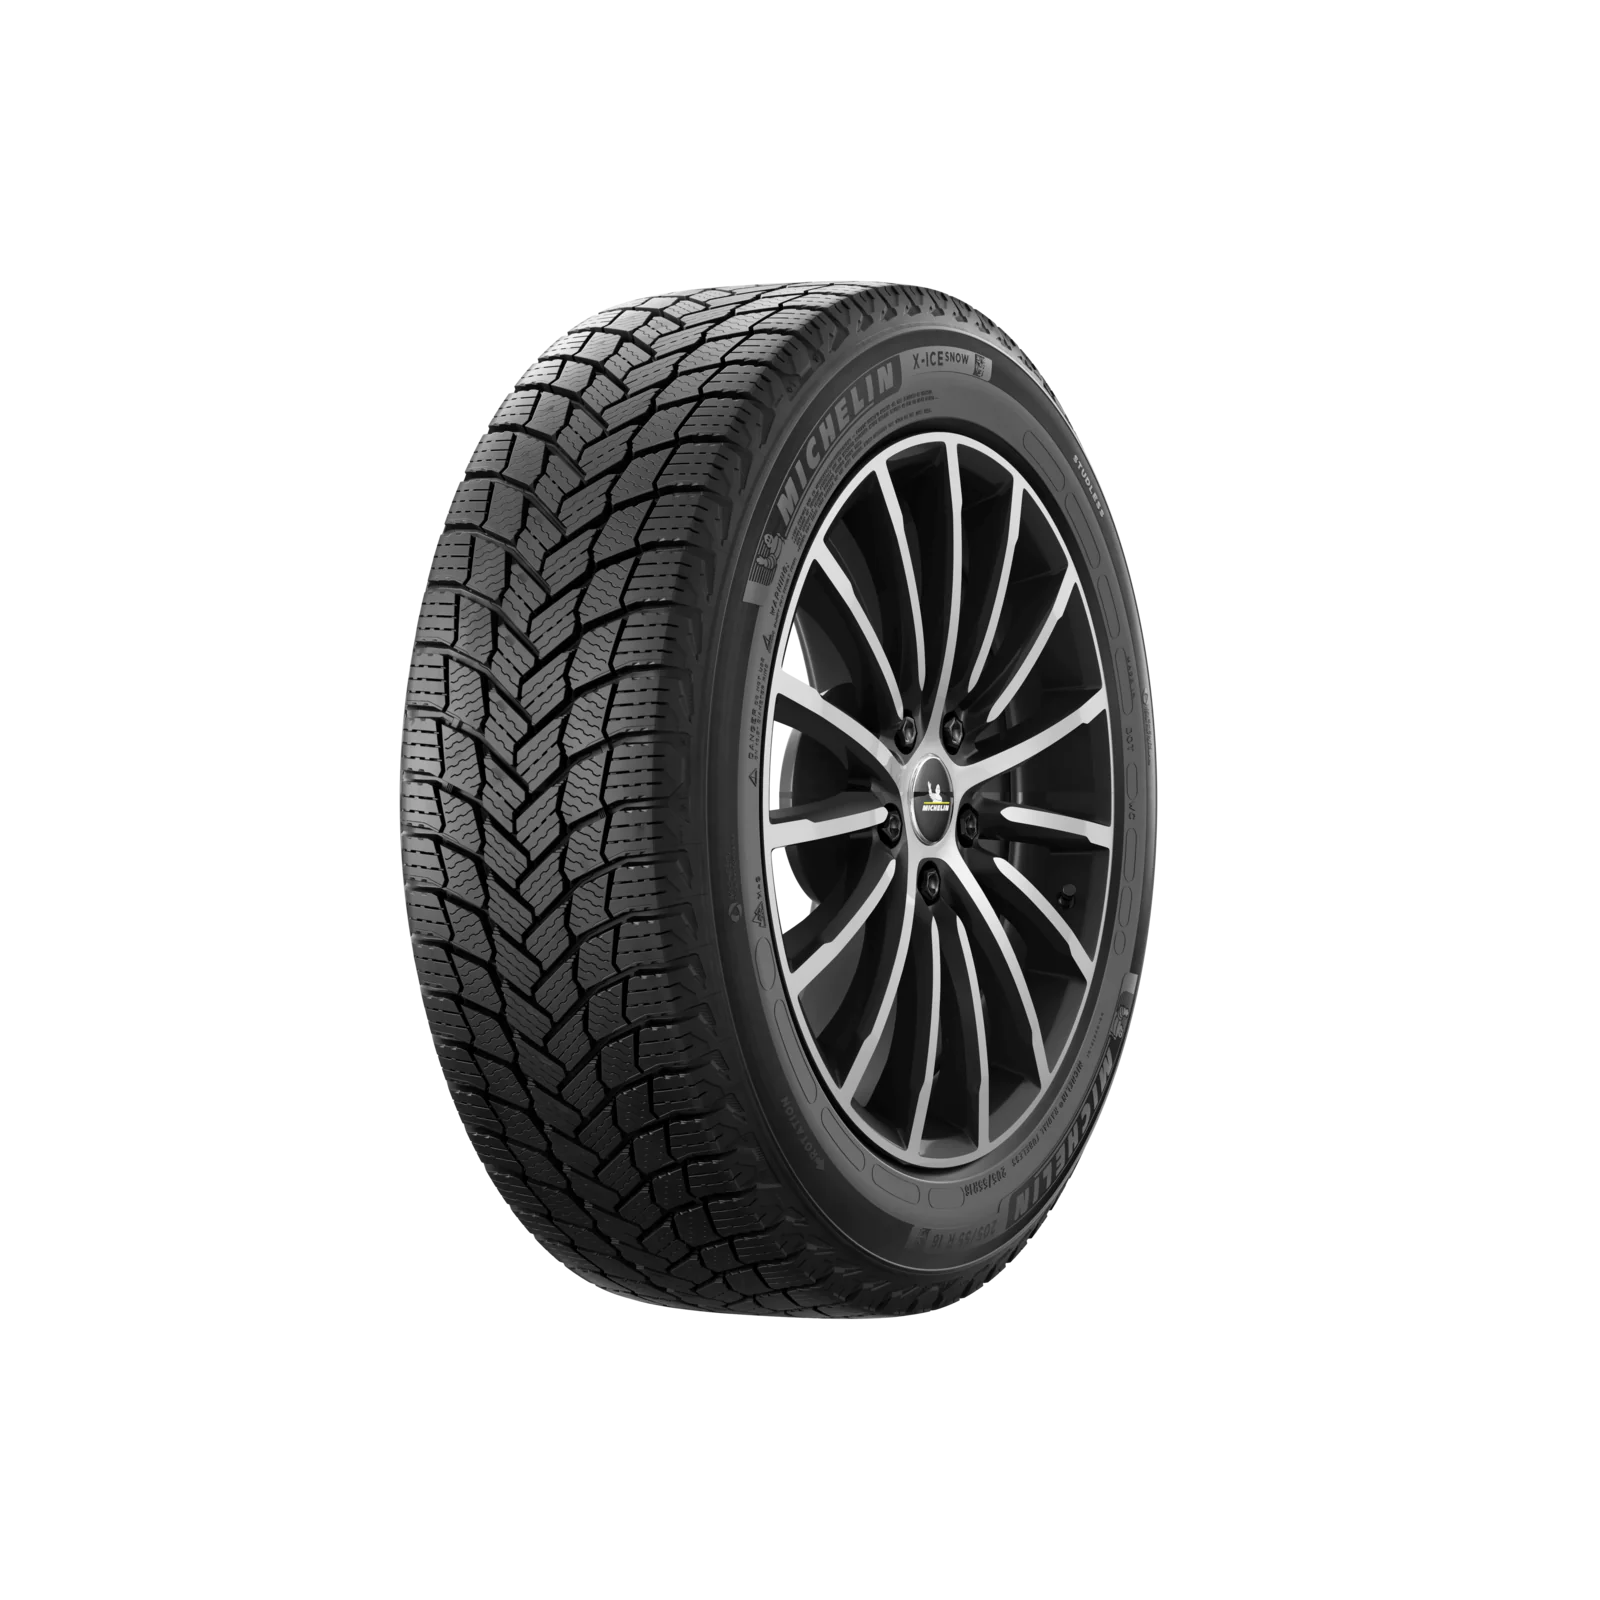 Michelin Michelin 235/60 R18 103H X-ICE SNOW Runflat pneumatici nuovi Invernale 